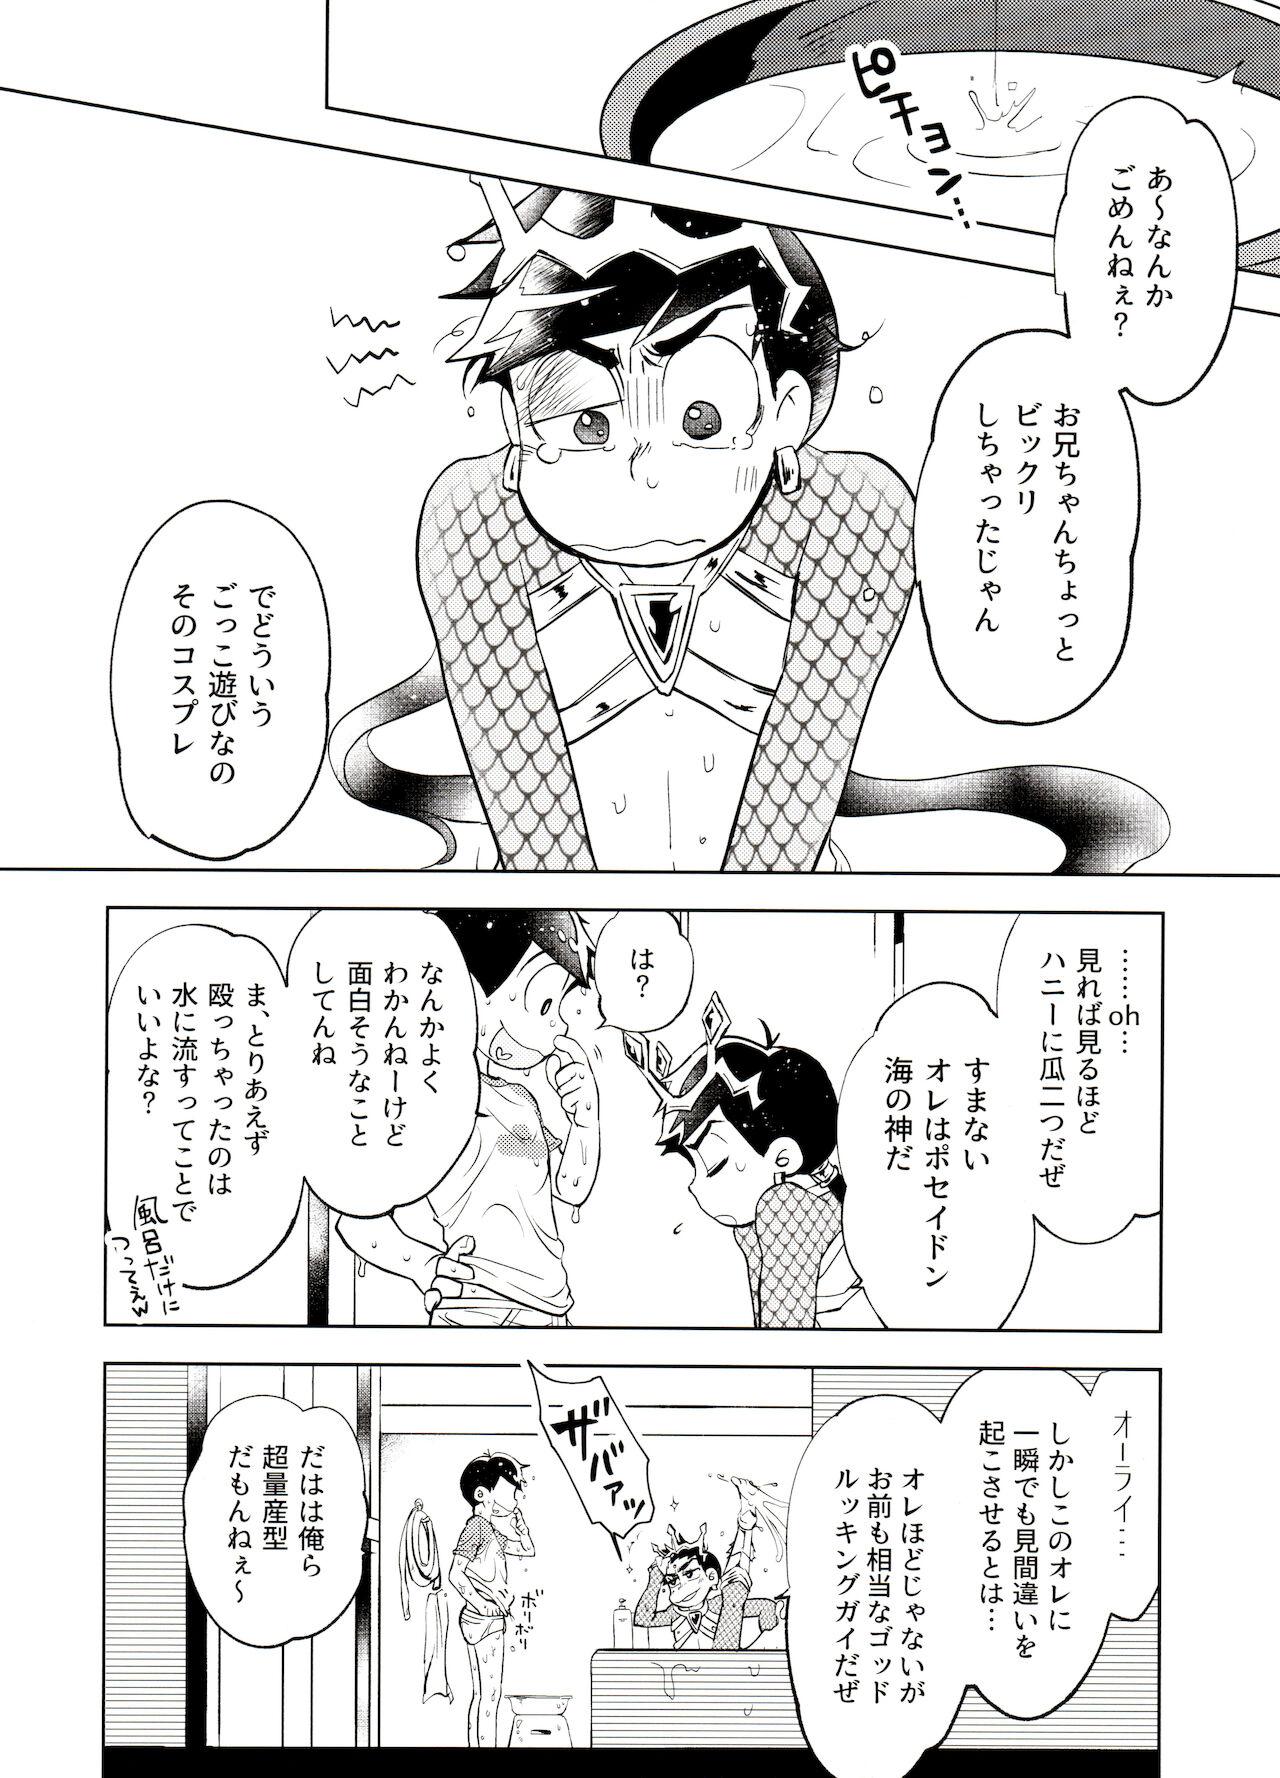 Flash Honjitsu wa Tokoro ni Yori Kaminari o Tomonatta Kami to Narudeshou. - Osomatsu san Chinese - Page 7